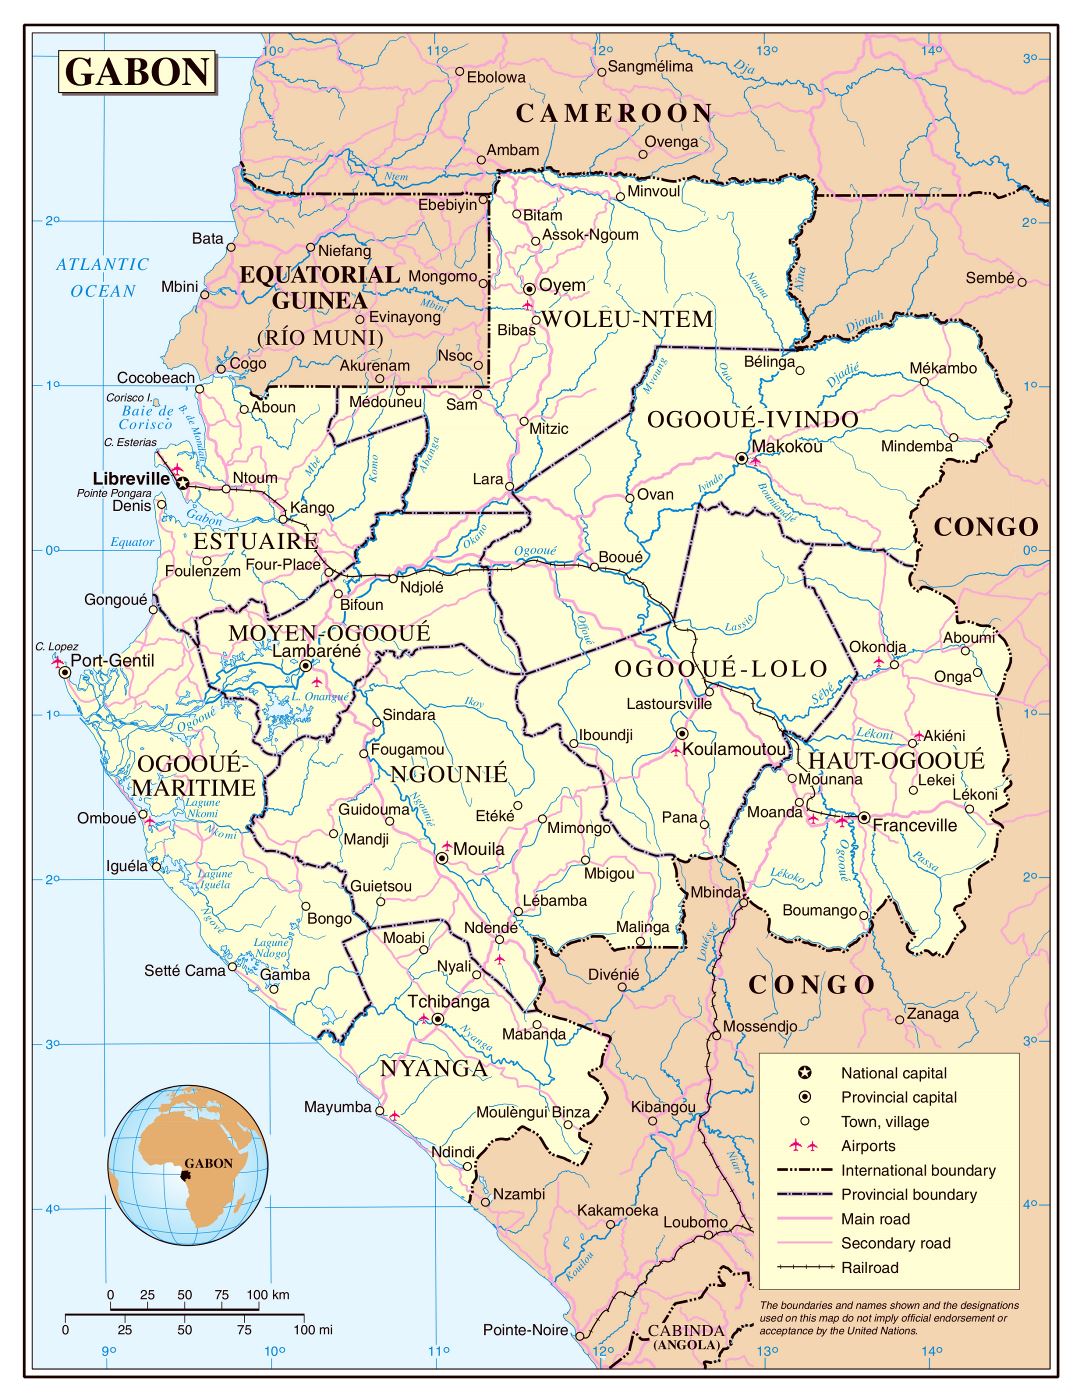 Большая детальная политическая и административная карта Габона с дорогами, железными дорогами, городами и аэропортами